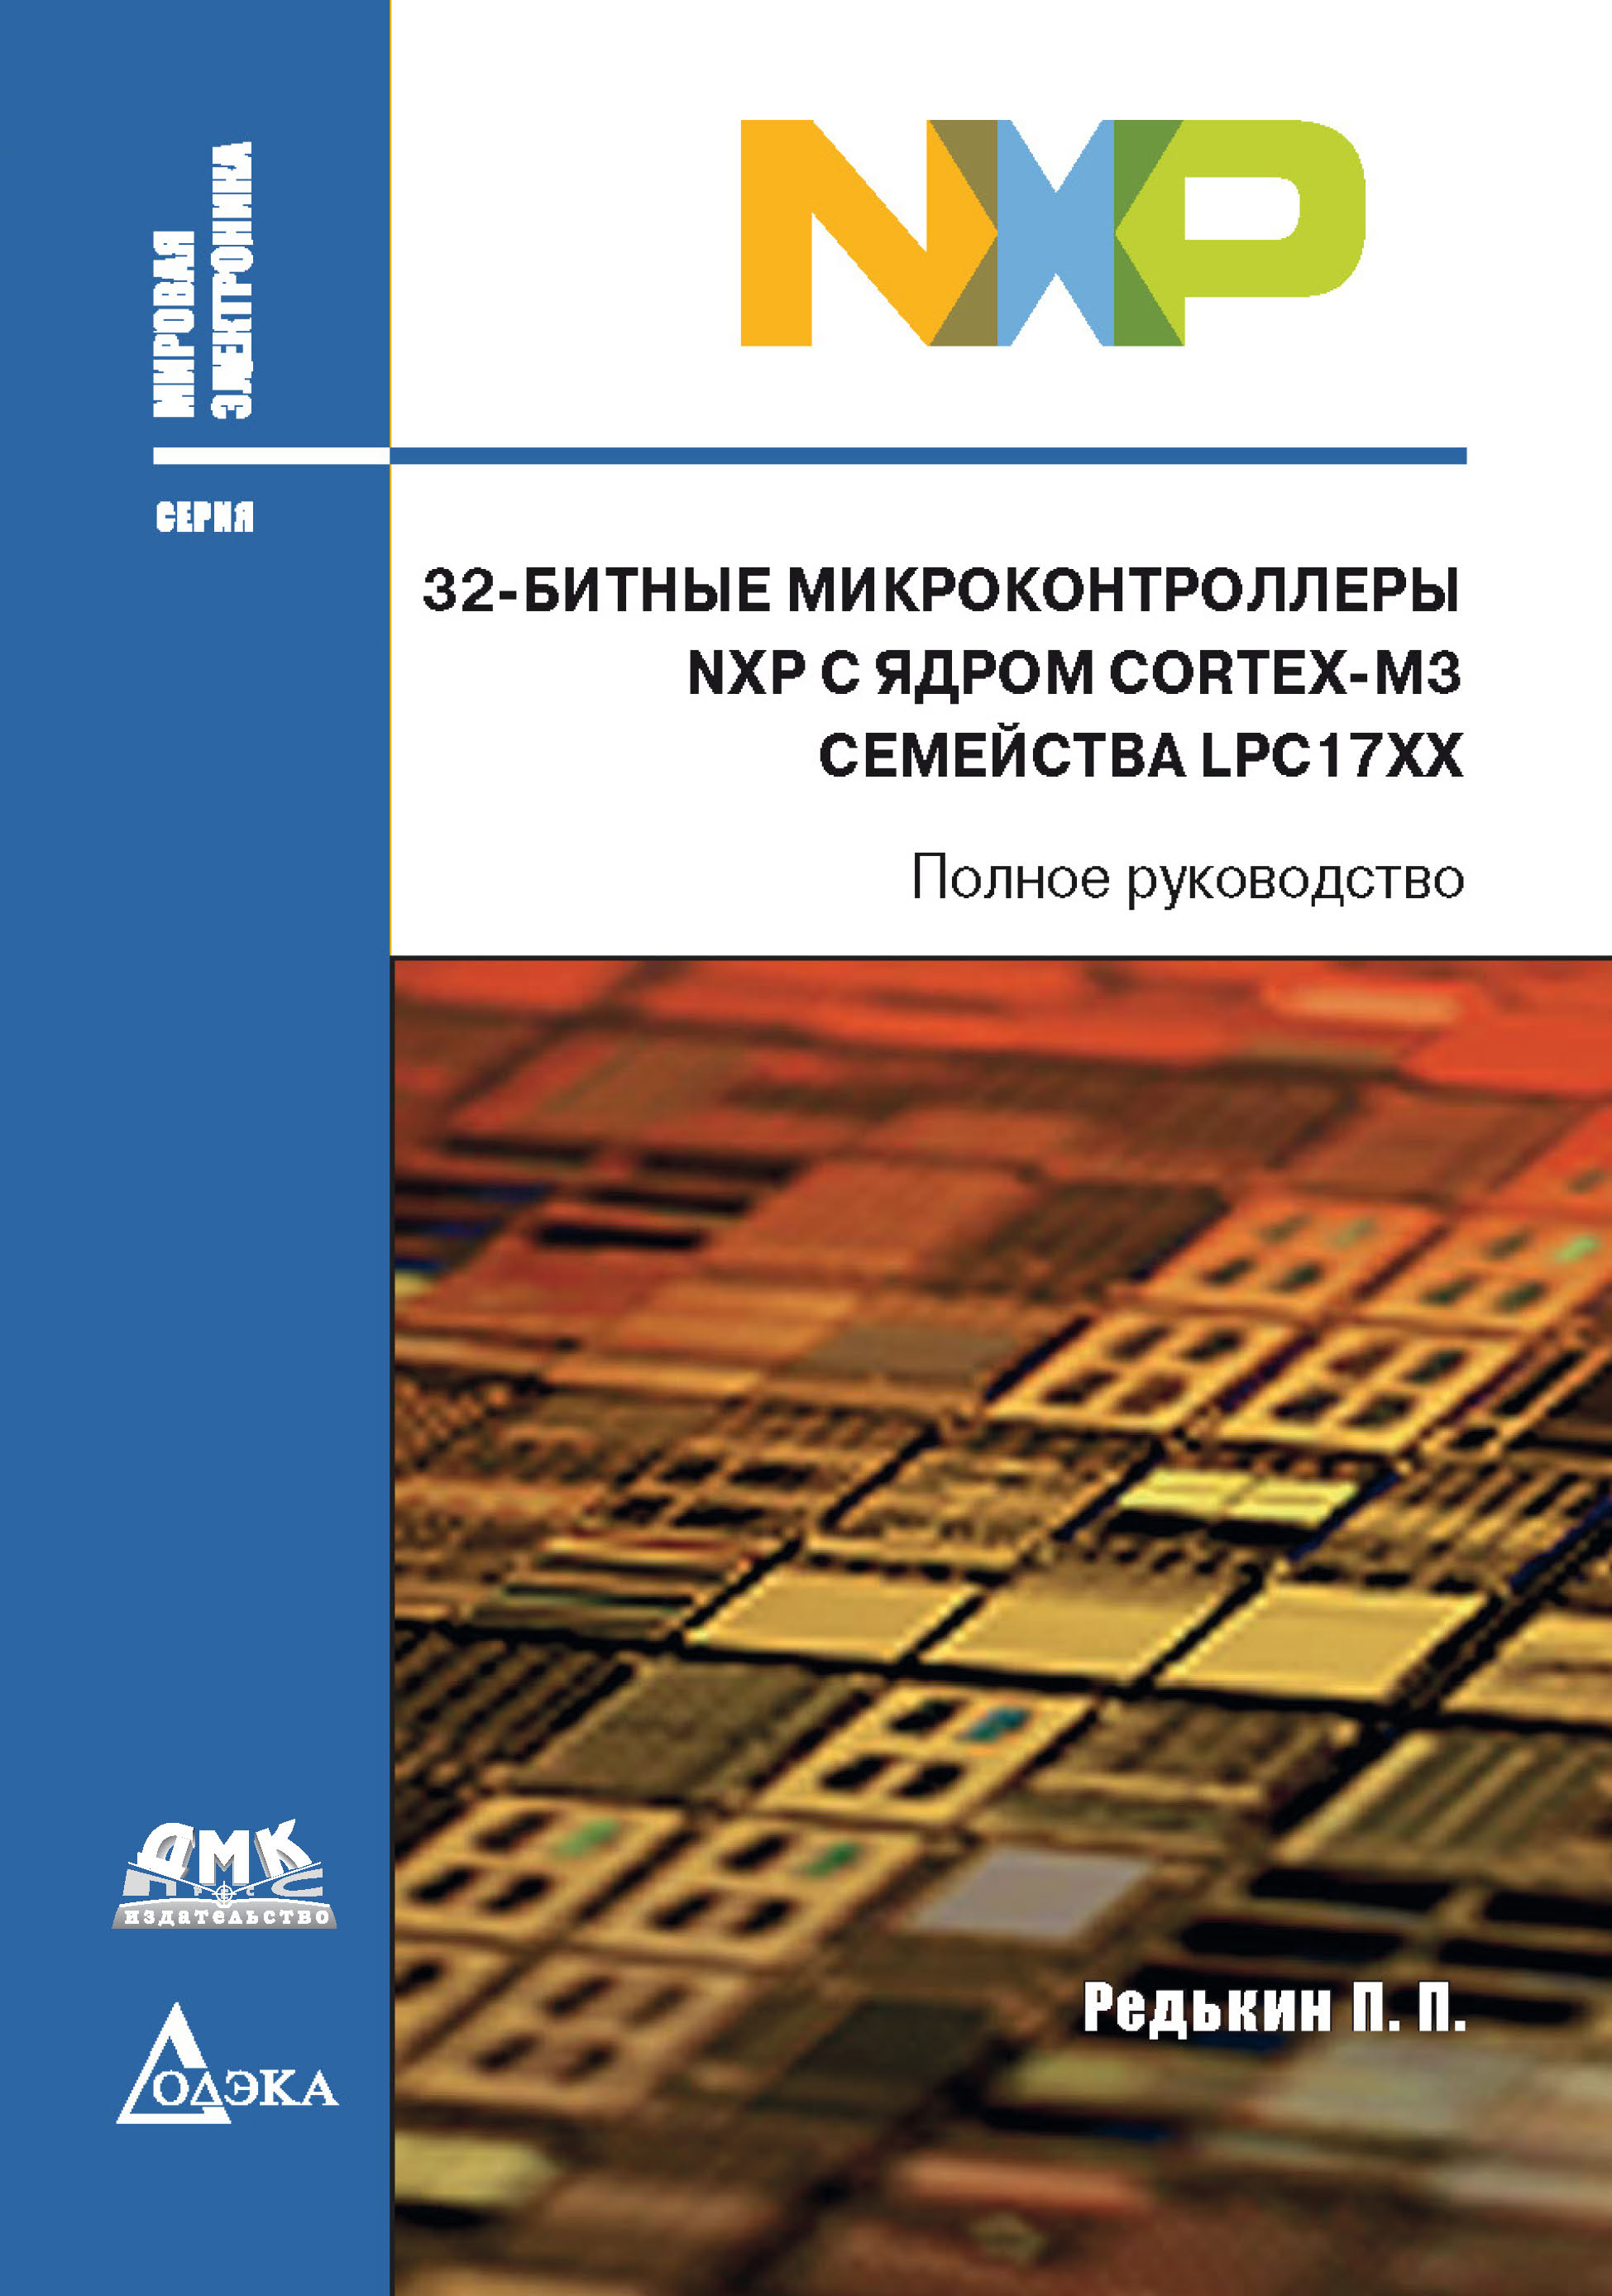 Книга Мировая электроника 32-битные микроконтроллеры NXP с ядром Cortex-M3 семейства LPC17xx созданная П. П. Редькин может относится к жанру программирование, программы, руководства, электроника. Стоимость электронной книги 32-битные микроконтроллеры NXP с ядром Cortex-M3 семейства LPC17xx с идентификатором 43643299 составляет 649.00 руб.